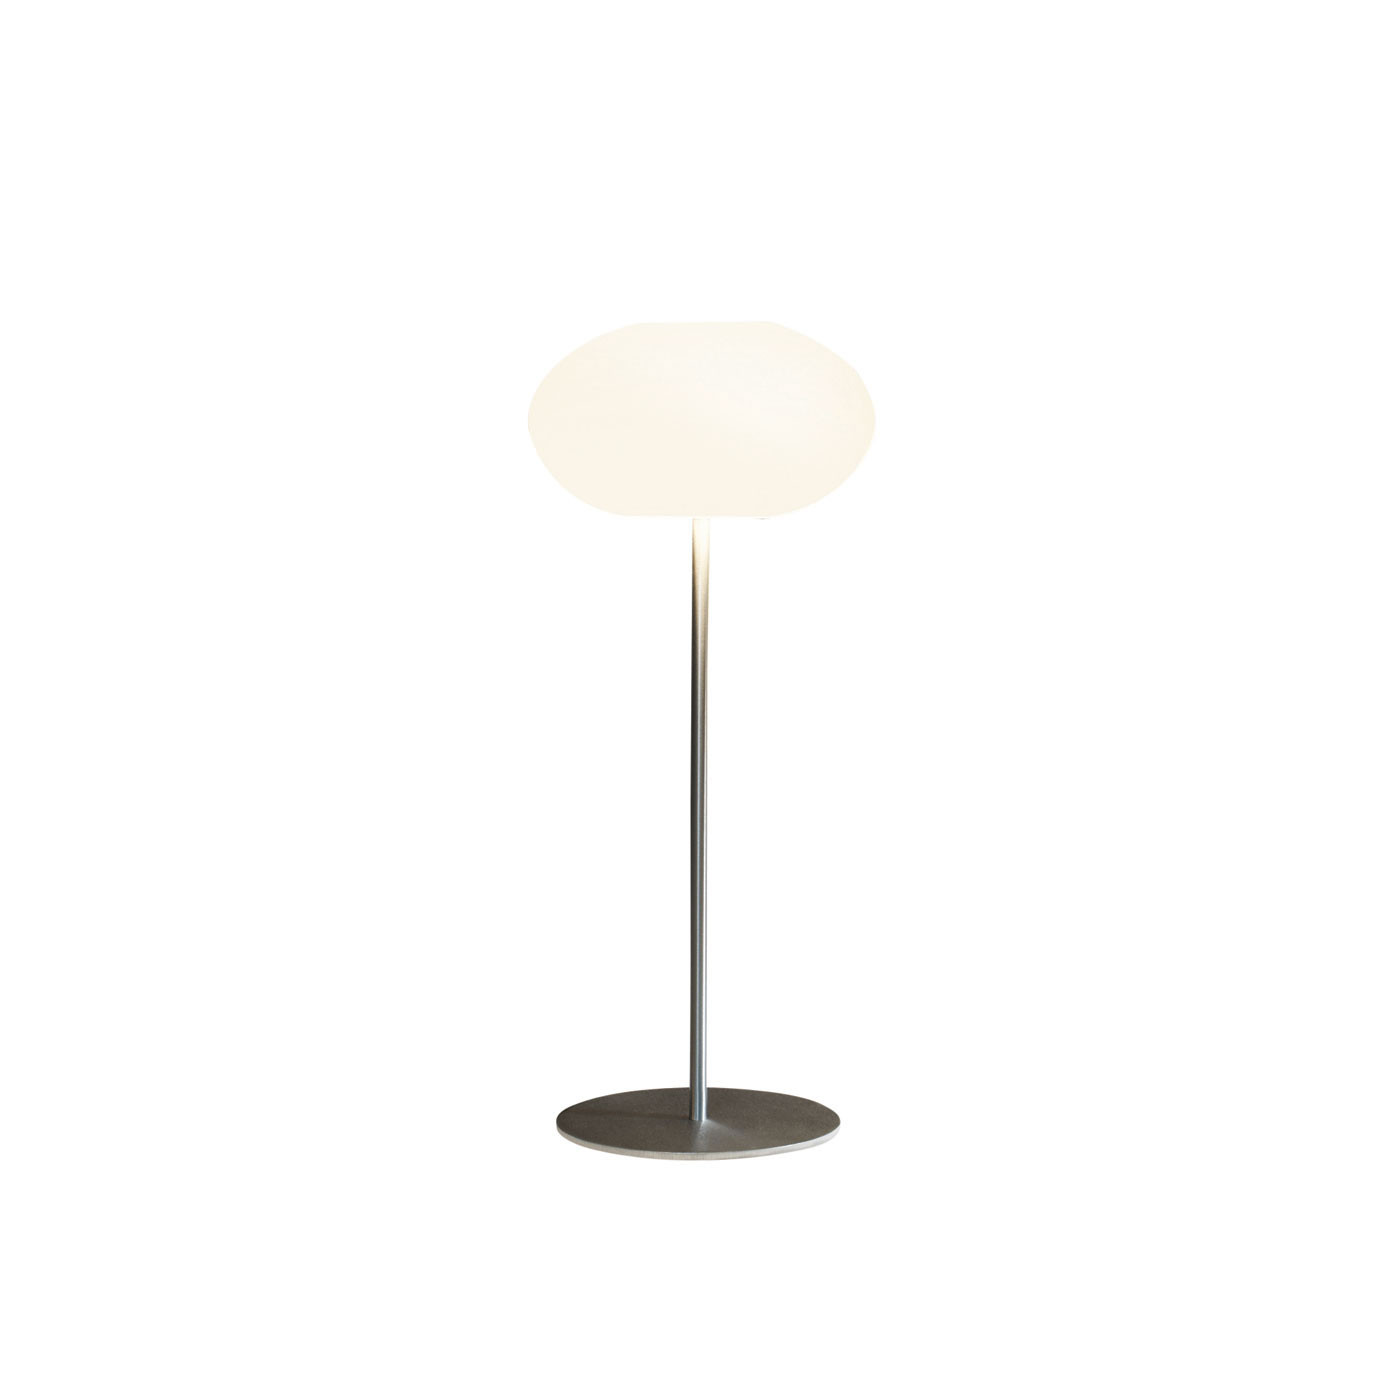 7 Circles Lamp Shade Diameter 19cm table lamp Ceiling or floor